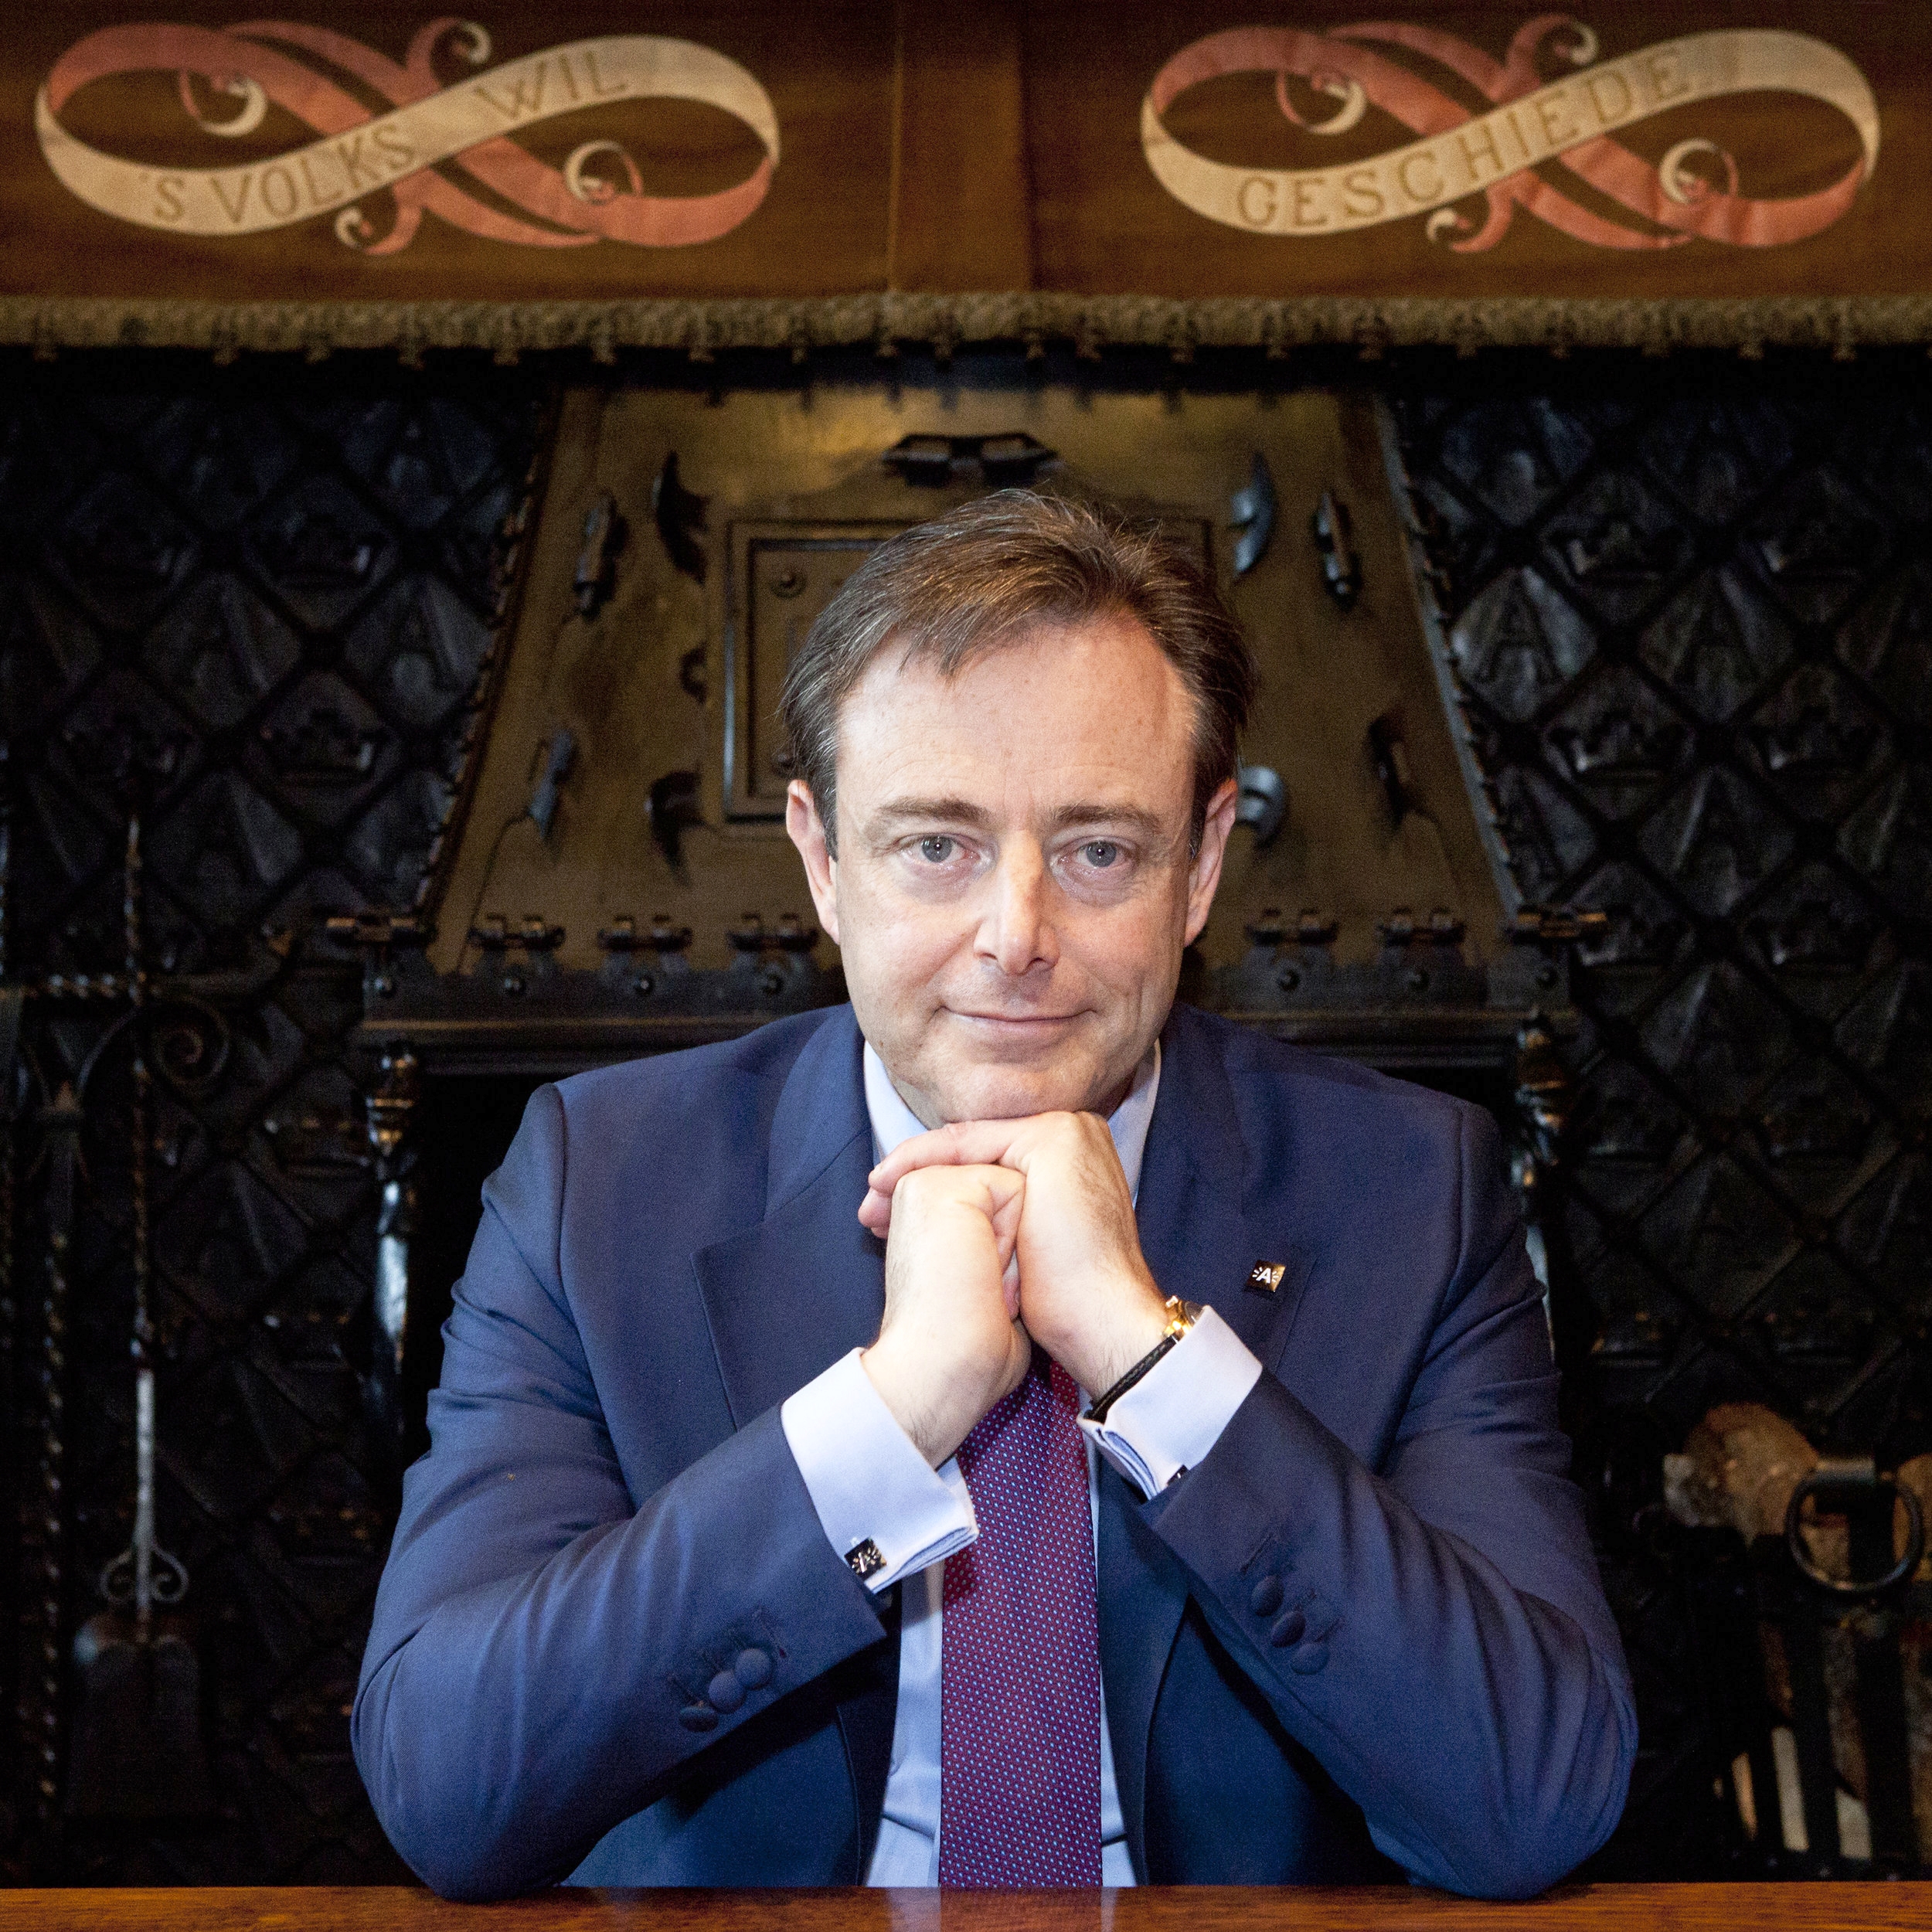 Bart De Wever / Mayer of Antwerp / Antwerp city hall december 2016